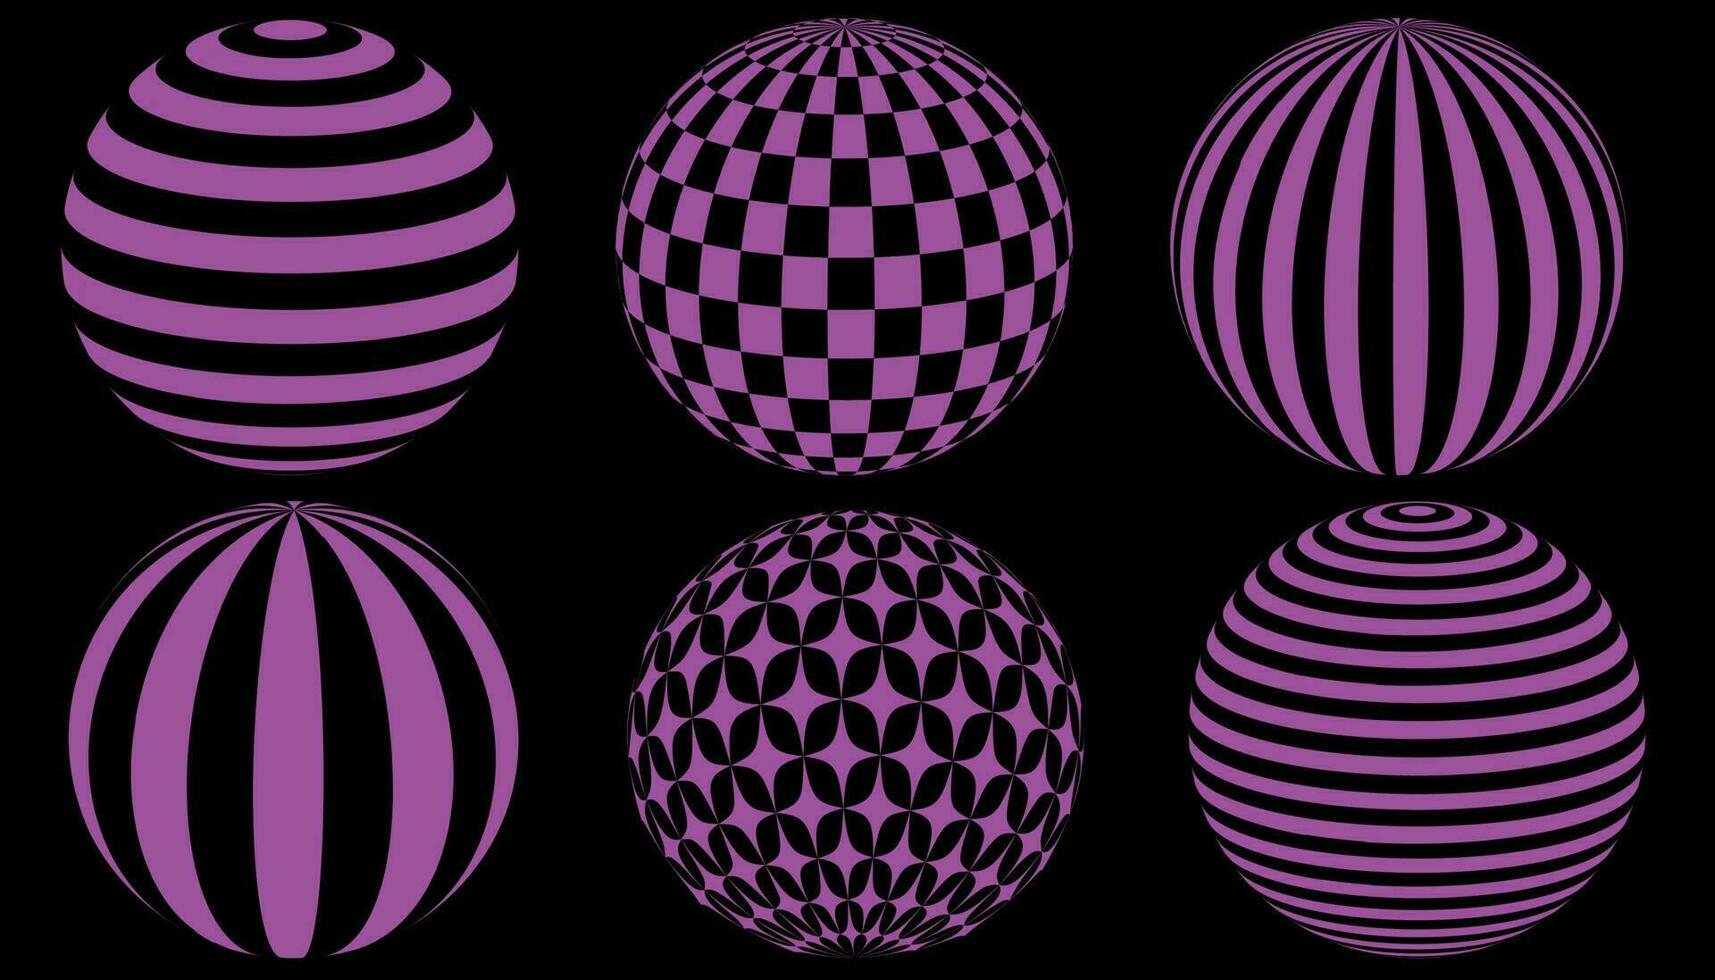 einstellen im retro psychedelisch Stil mit geometrisch Formen Kreis, Zebra. Ball, Sterne. surreal Kreise im Rosa, Acid Farben. vektor